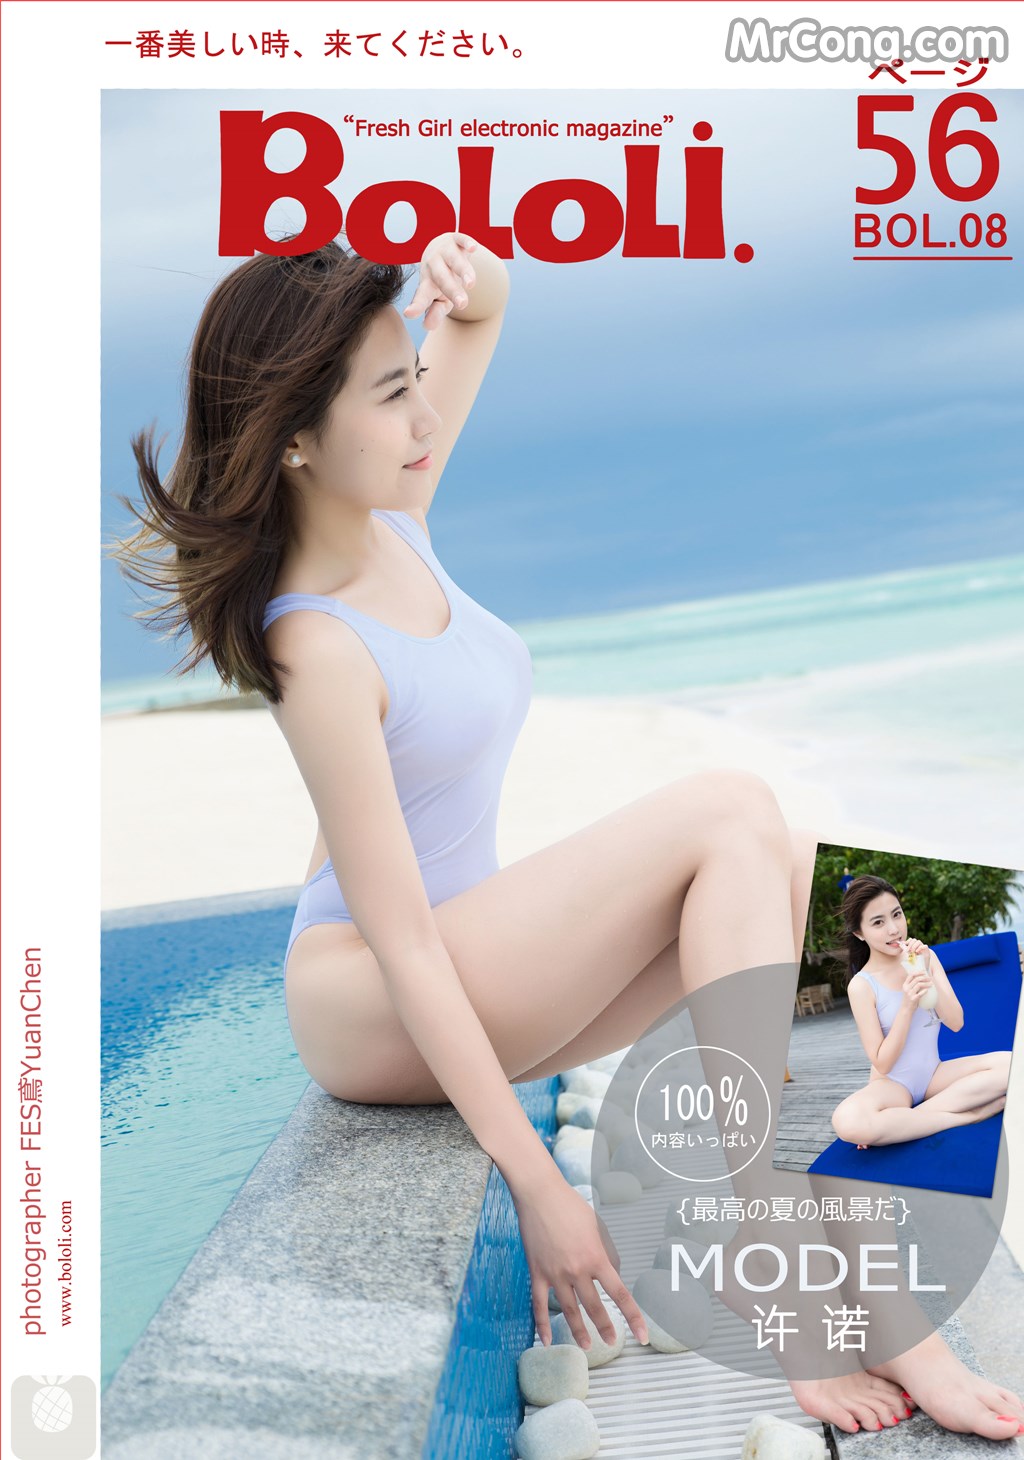 BoLoli 2016-10-18 Vol.008: Model Sabrina (许诺) (52 photos)